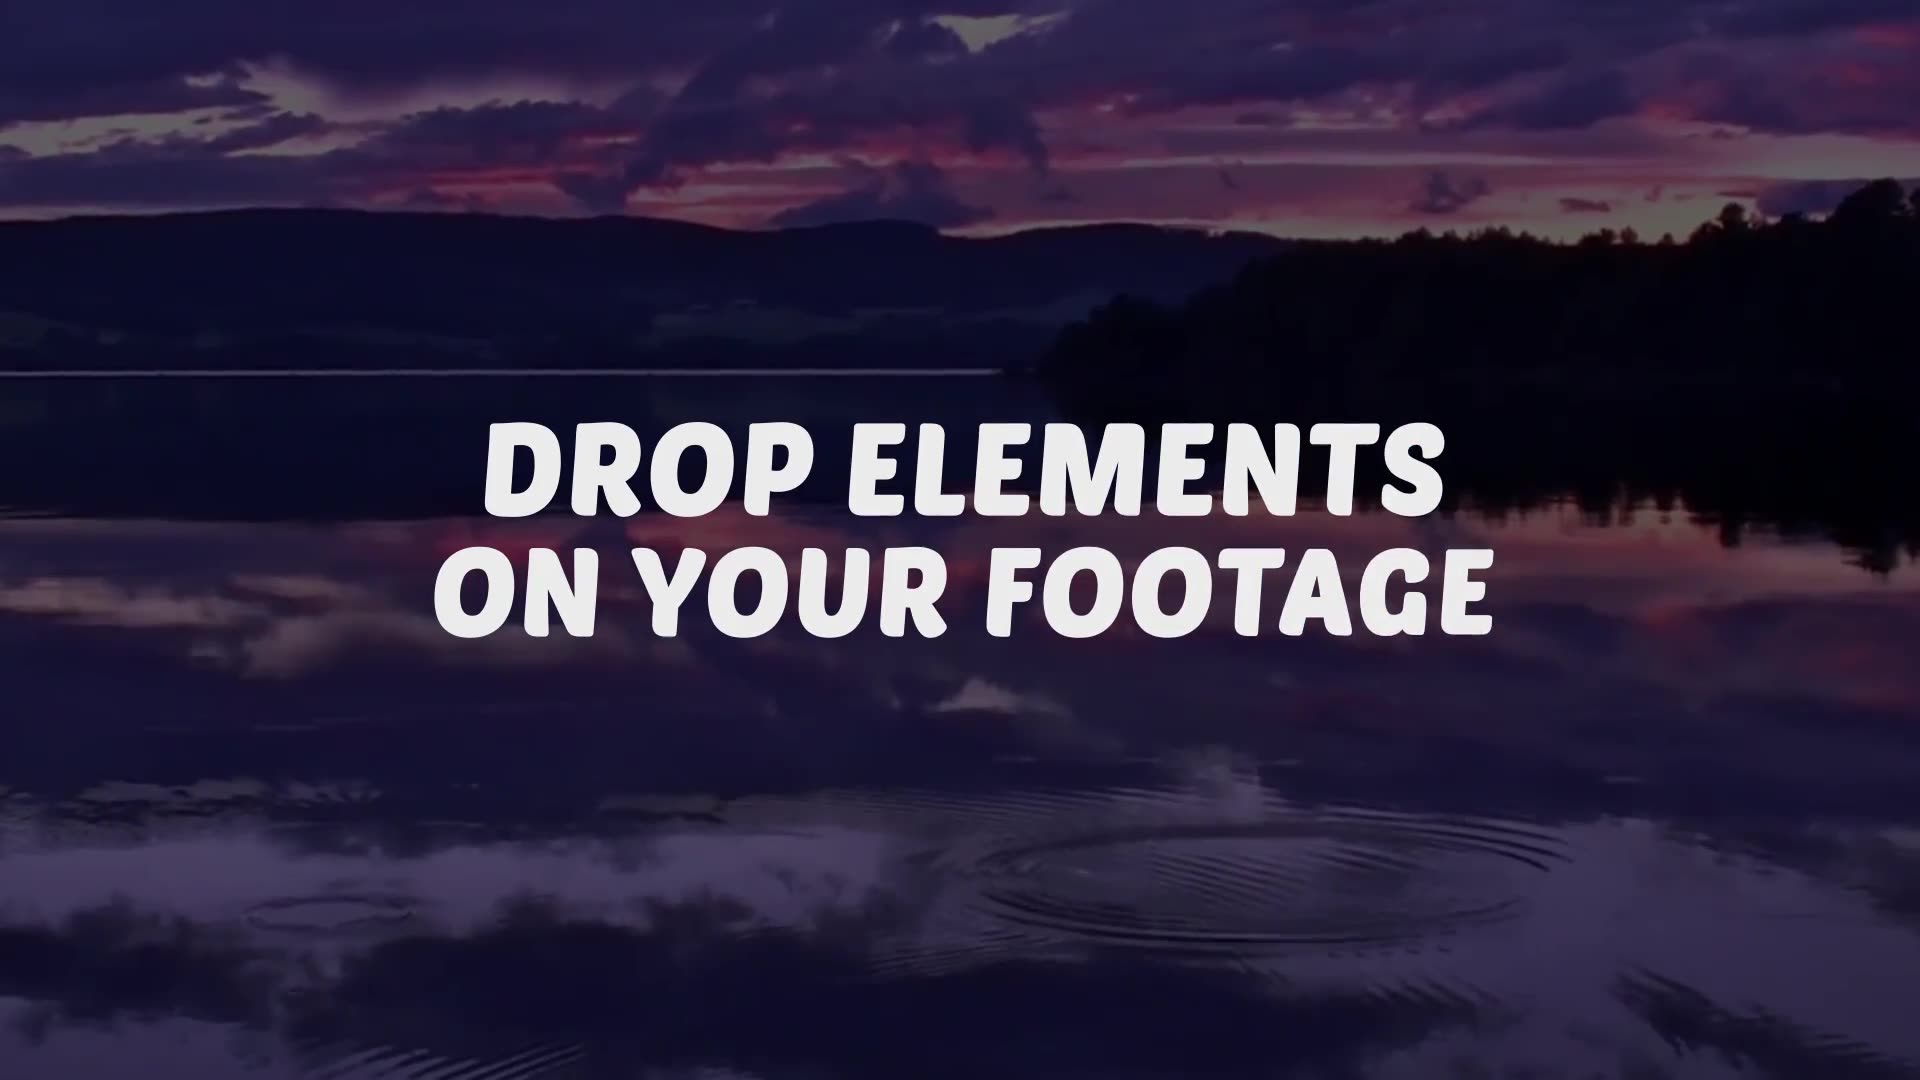 Splash Elements | Premiere Pro MOGRT Videohive 28354386 Premiere Pro Image 3